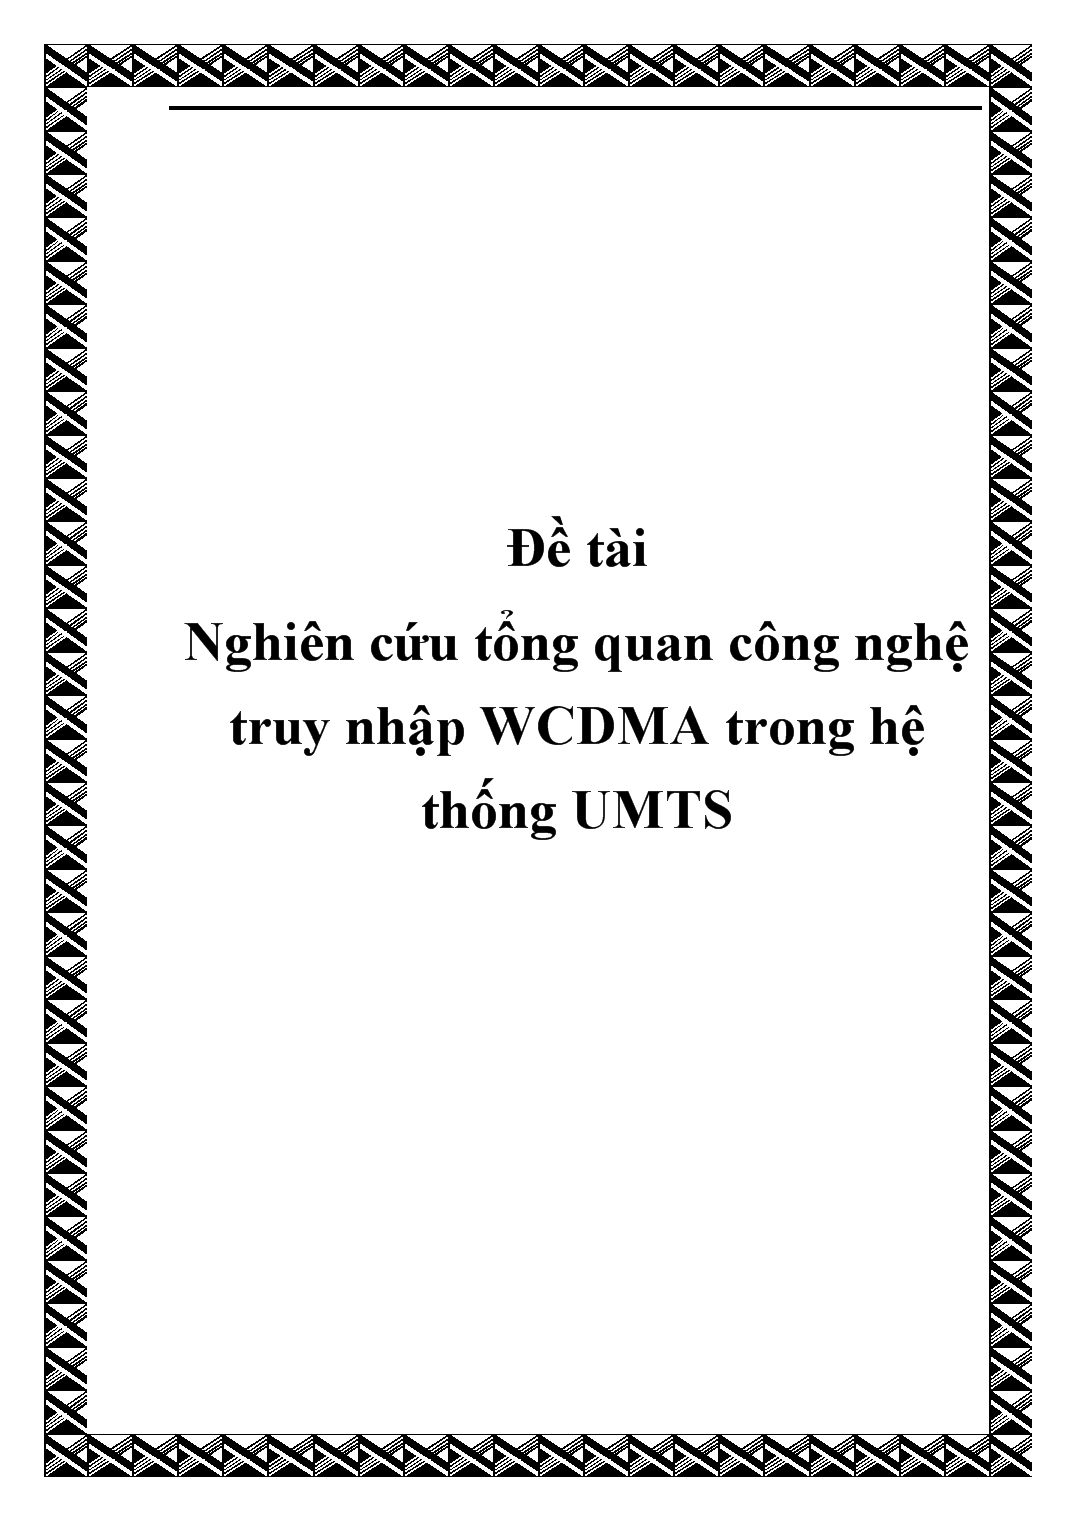 Đề tài Nghiên cứu tổng quan công nghệ truy nhập WCDMA trong hệ thống UMTS trang 1